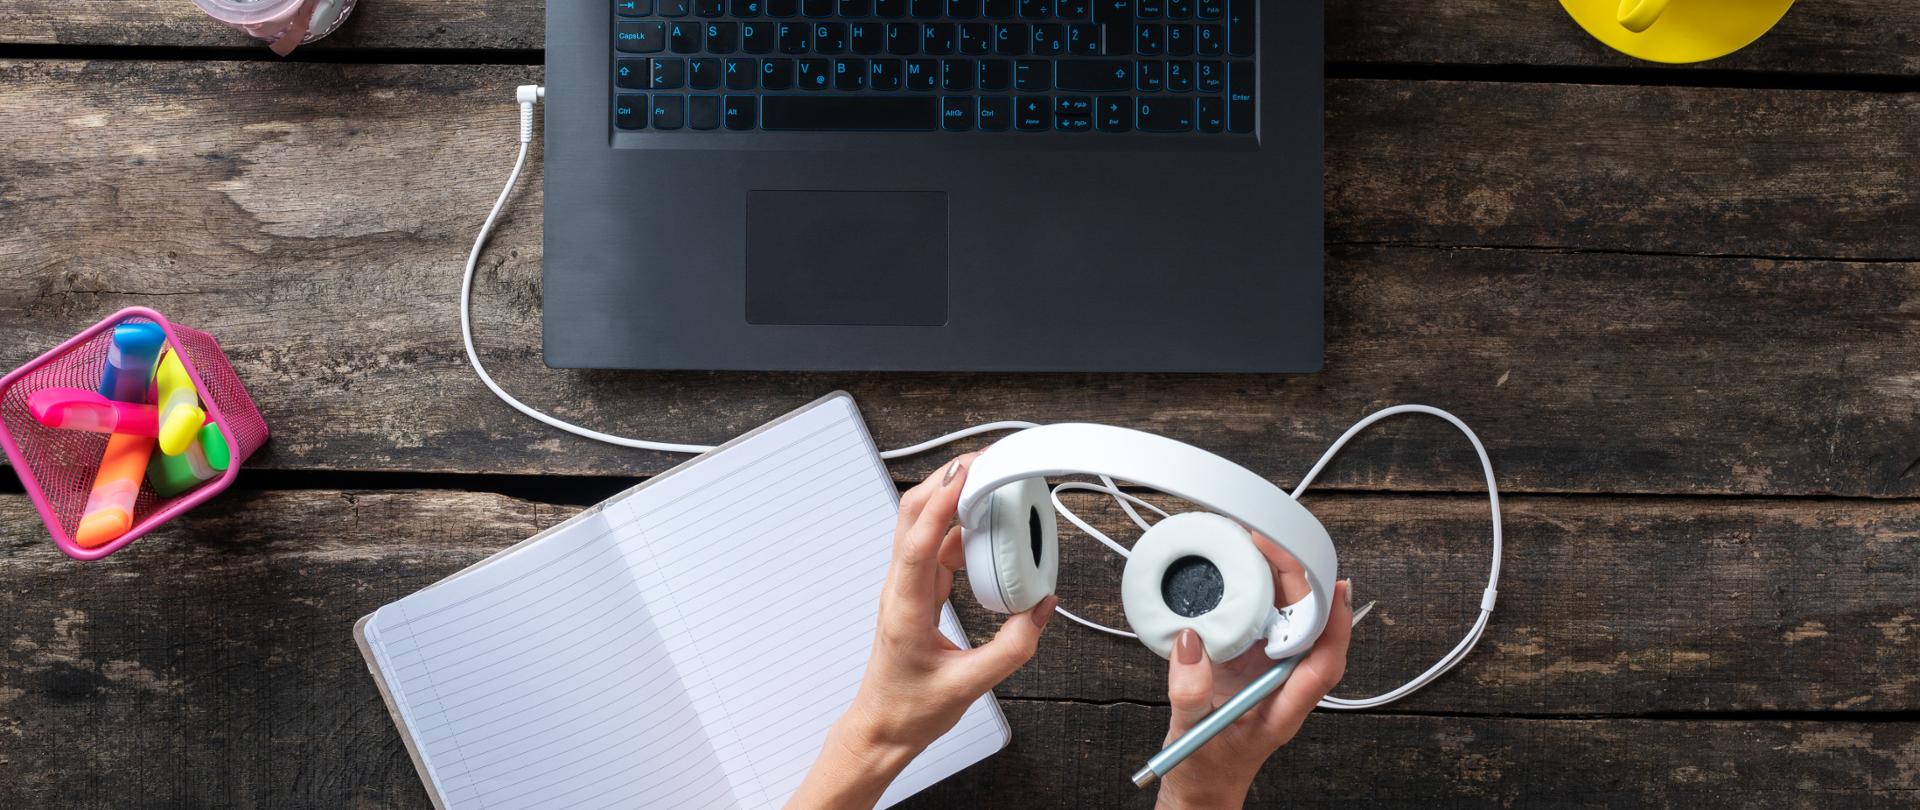 Zdjęcie (ujęcie od góry): widok drewnianego blatu, na który widać laptopa. Przed komputerem widoczne damskie dłonie trzymające białe słuchawki, obok notes i kolorowe zakreślacze.